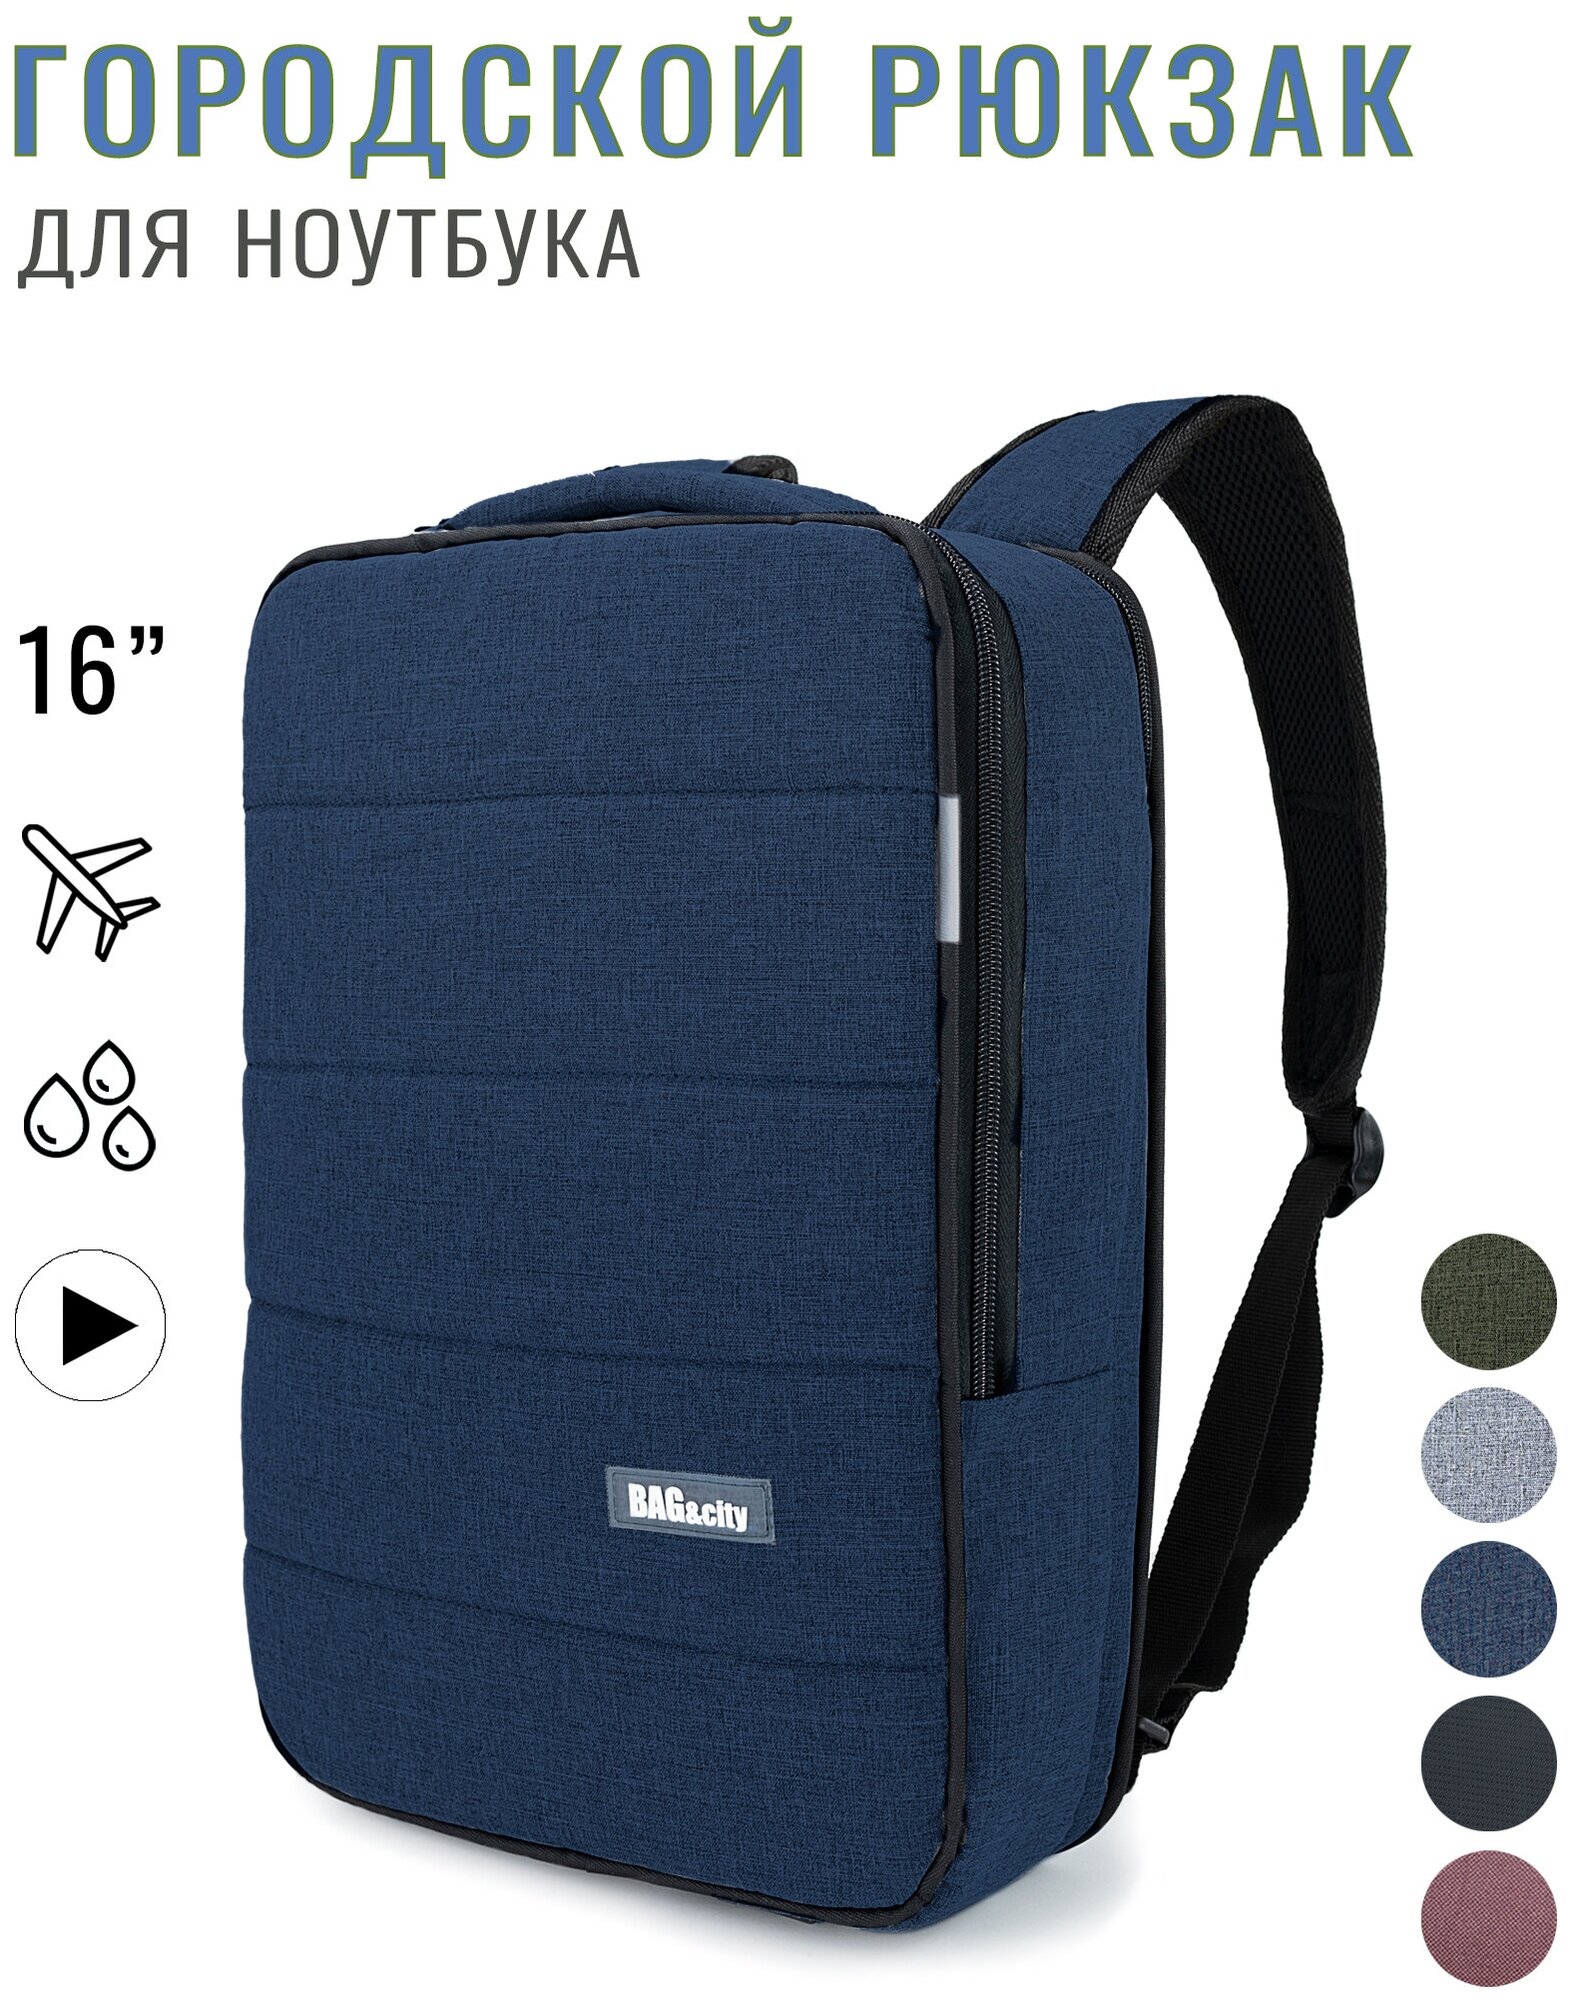 Городской рюкзак для ноутбука BAG&city Vize (синий)